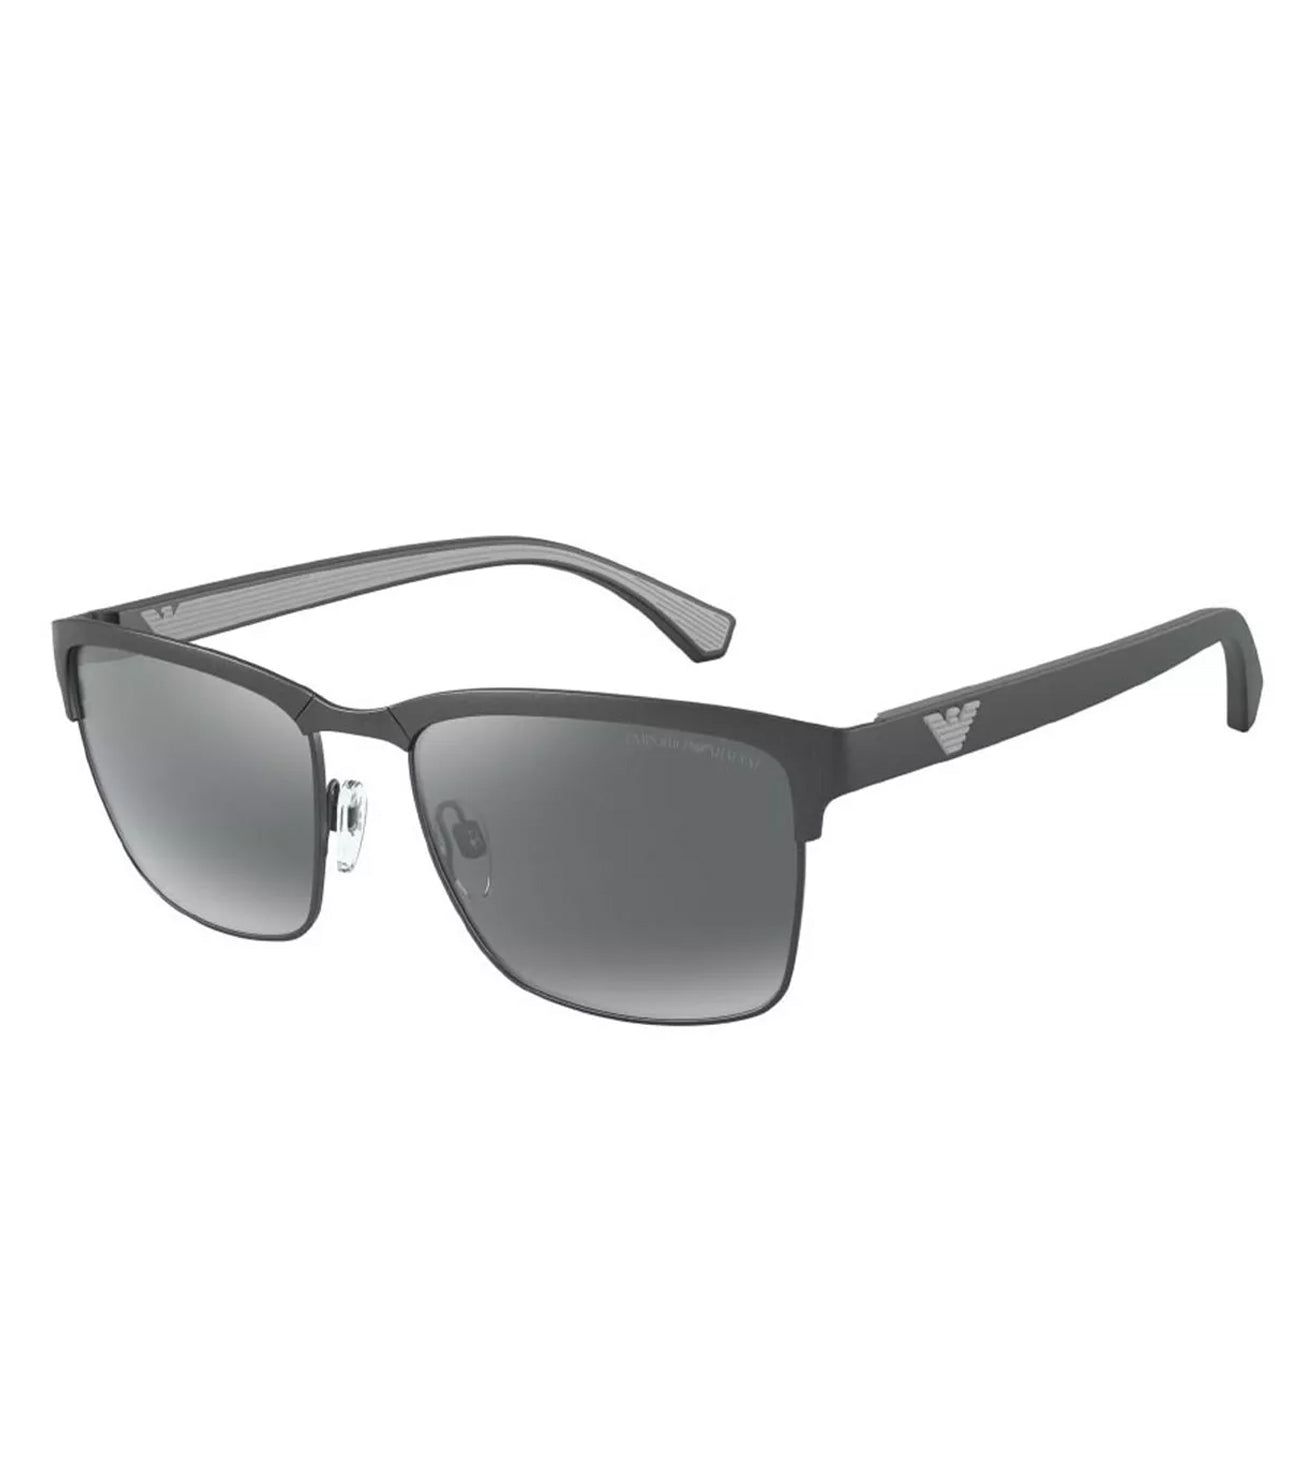 Emporio Armani Men's Silver-mirrored Rectangular Sunglasses